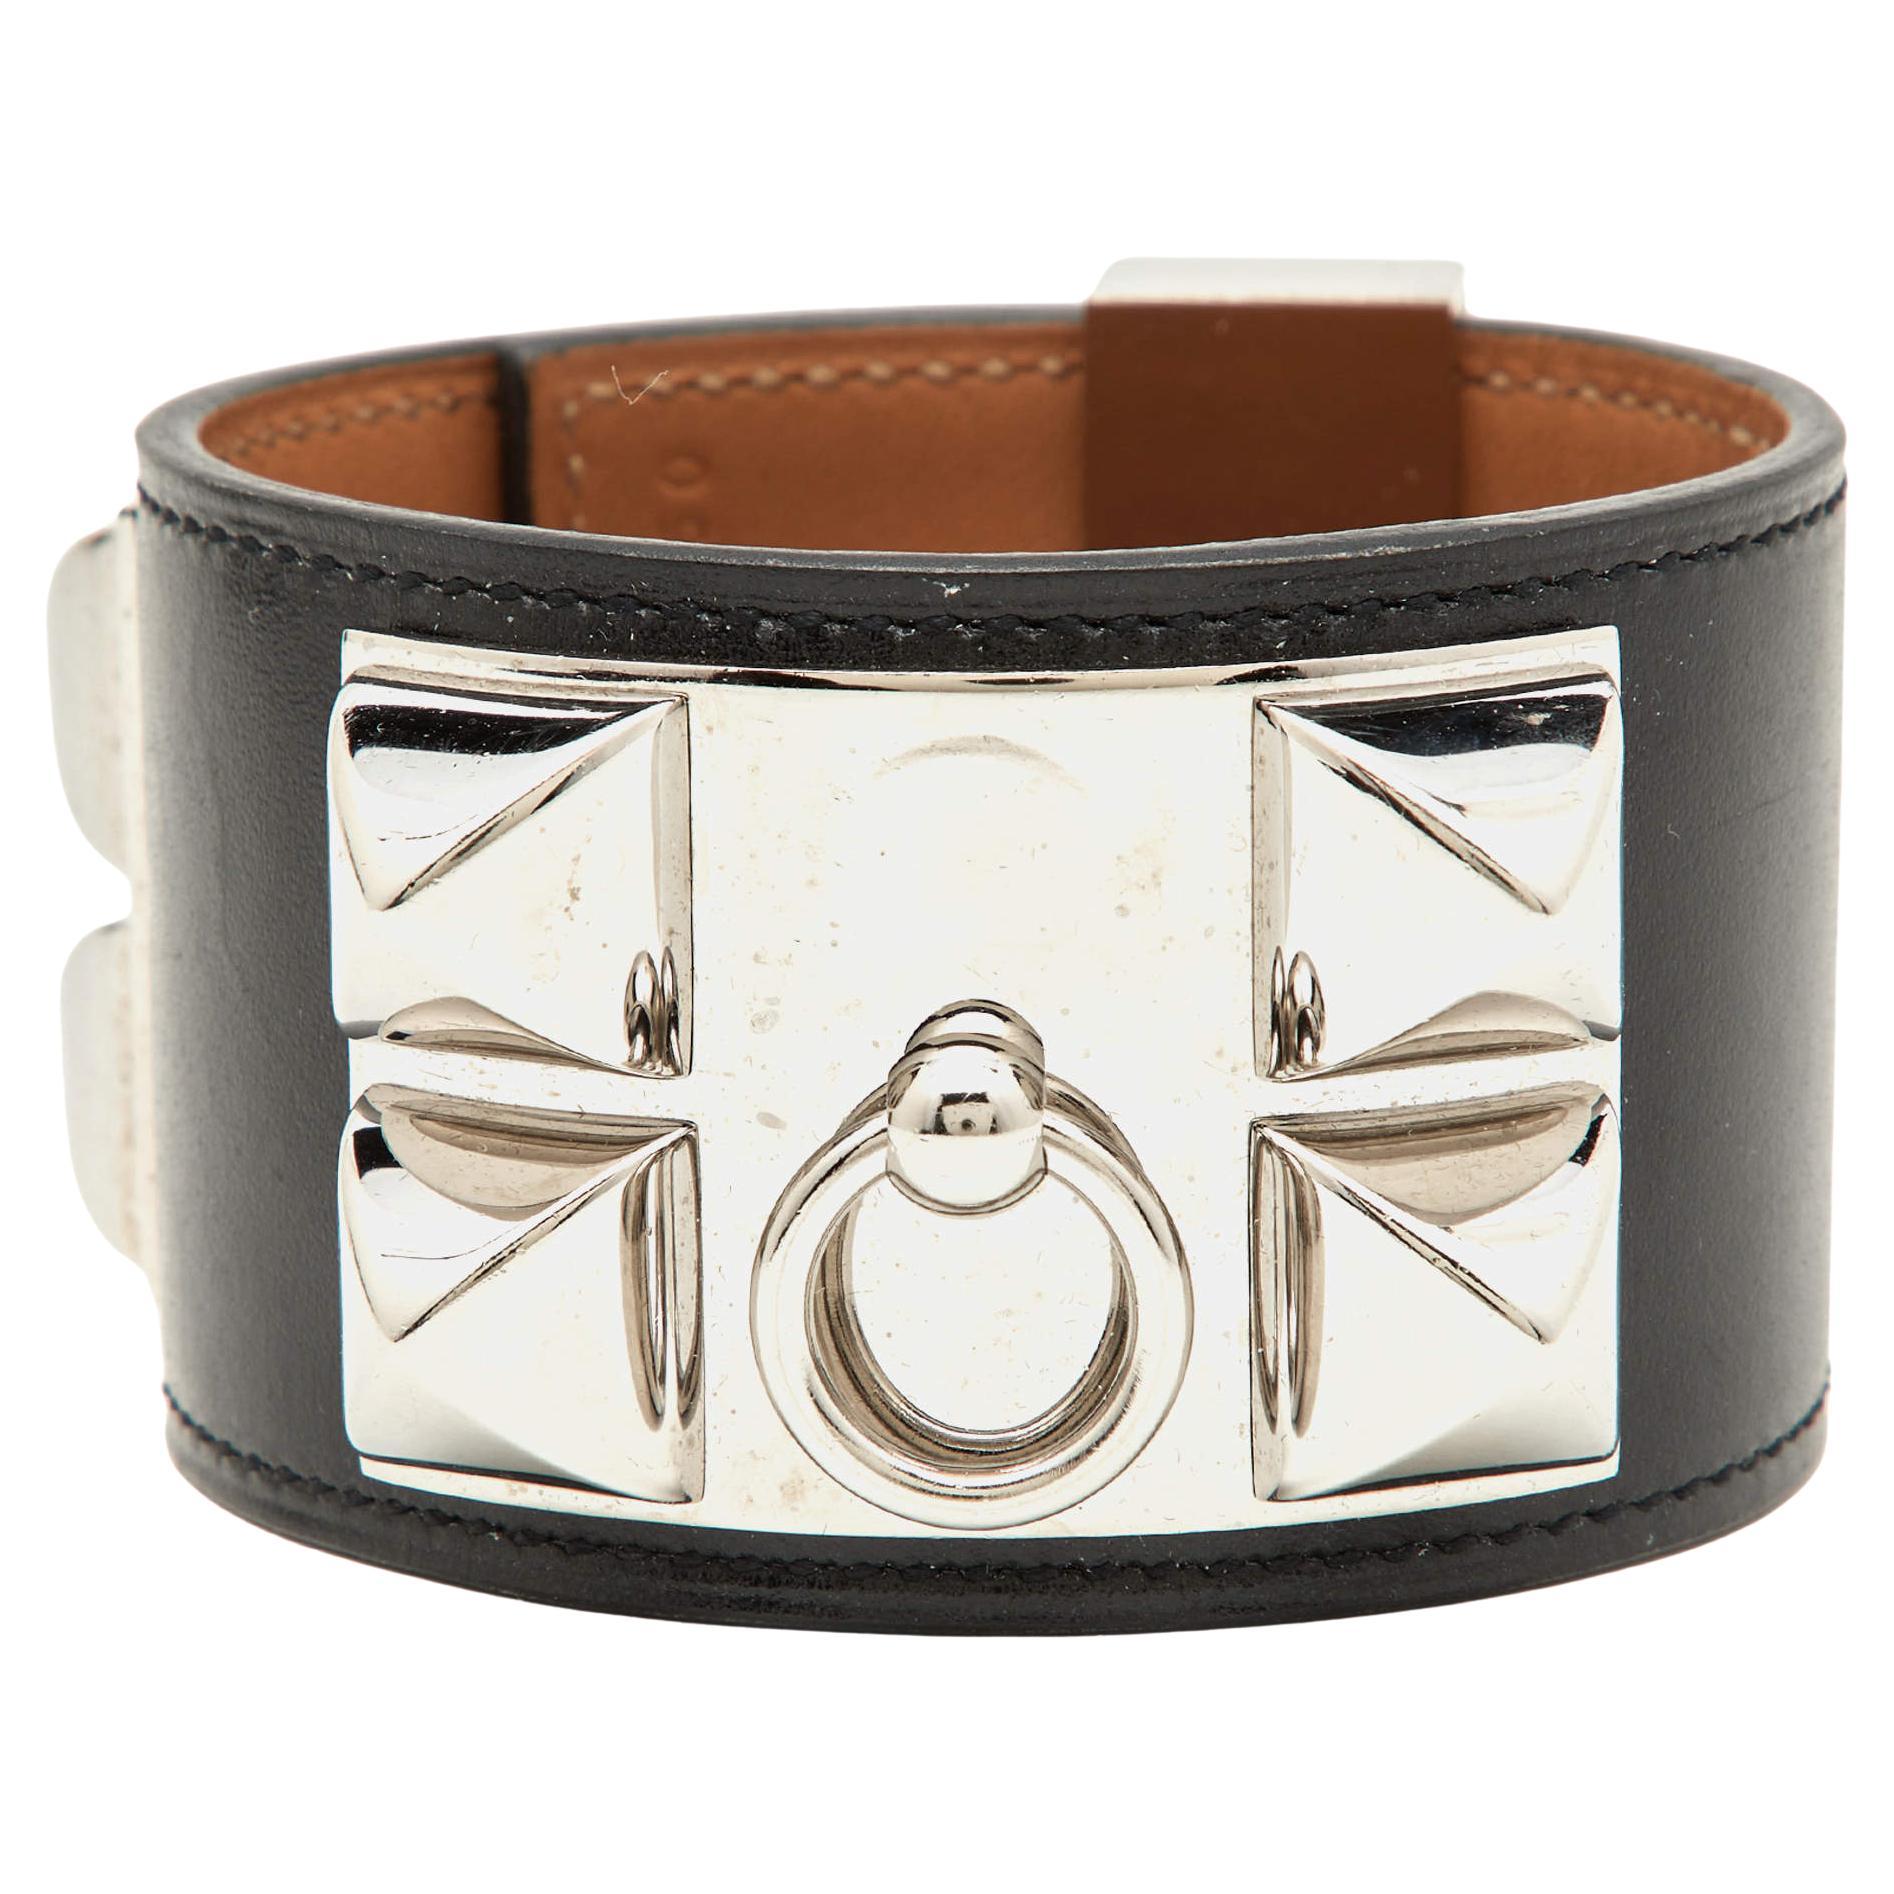 Hermes Collier De Chien Black Leather Palladium Plated Wide Cuff Bracelet S For Sale